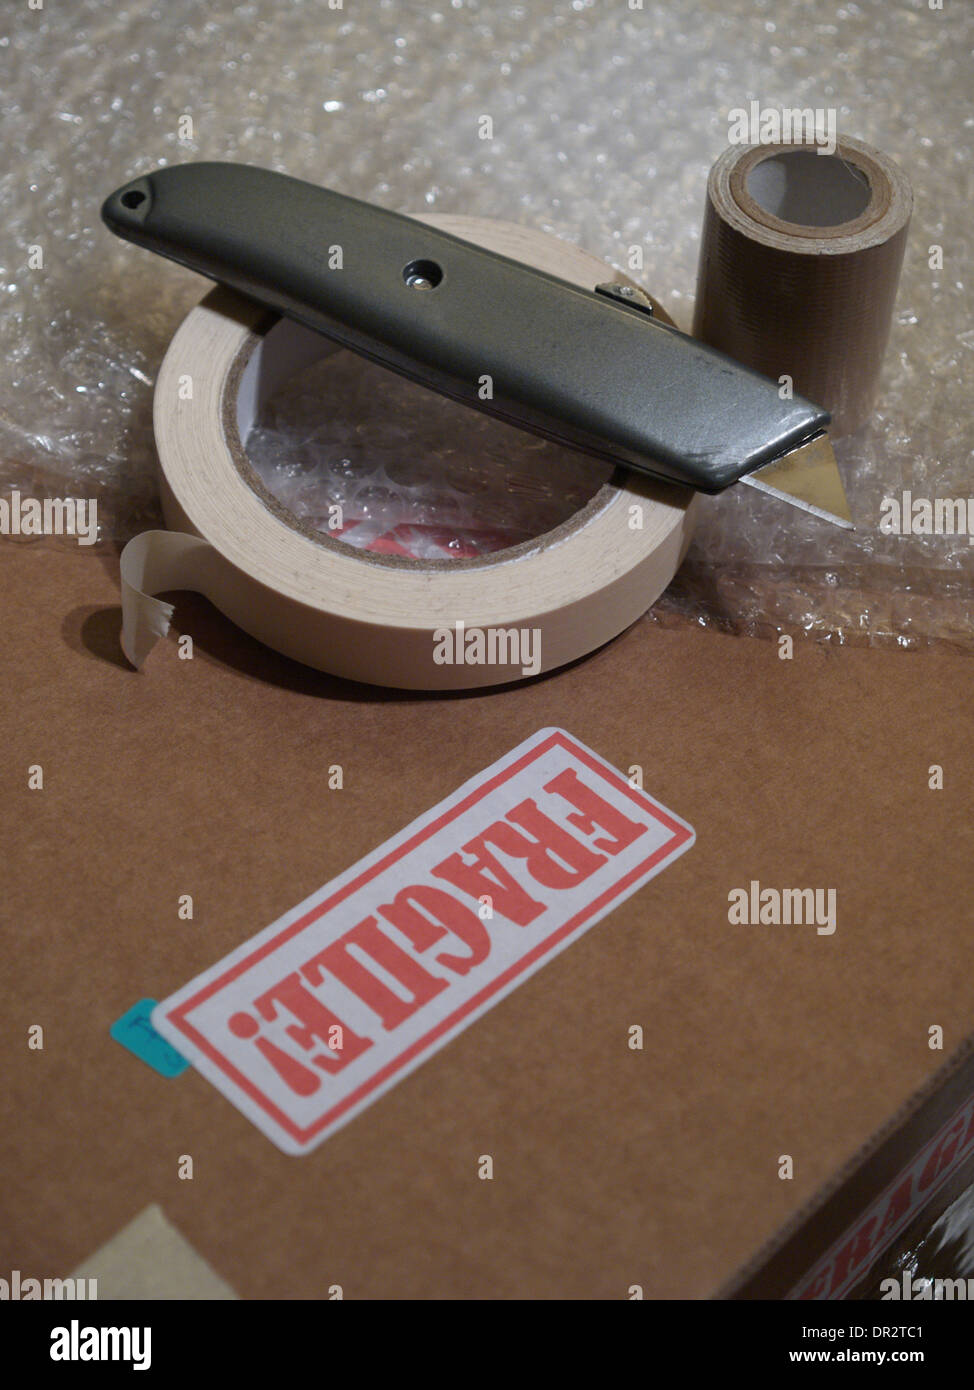 Materiali di imballaggio comprendente una scatola con l'etichetta "Fragile", un mestiere coltello, bubble-wrap e bobine di nastro. Foto Stock